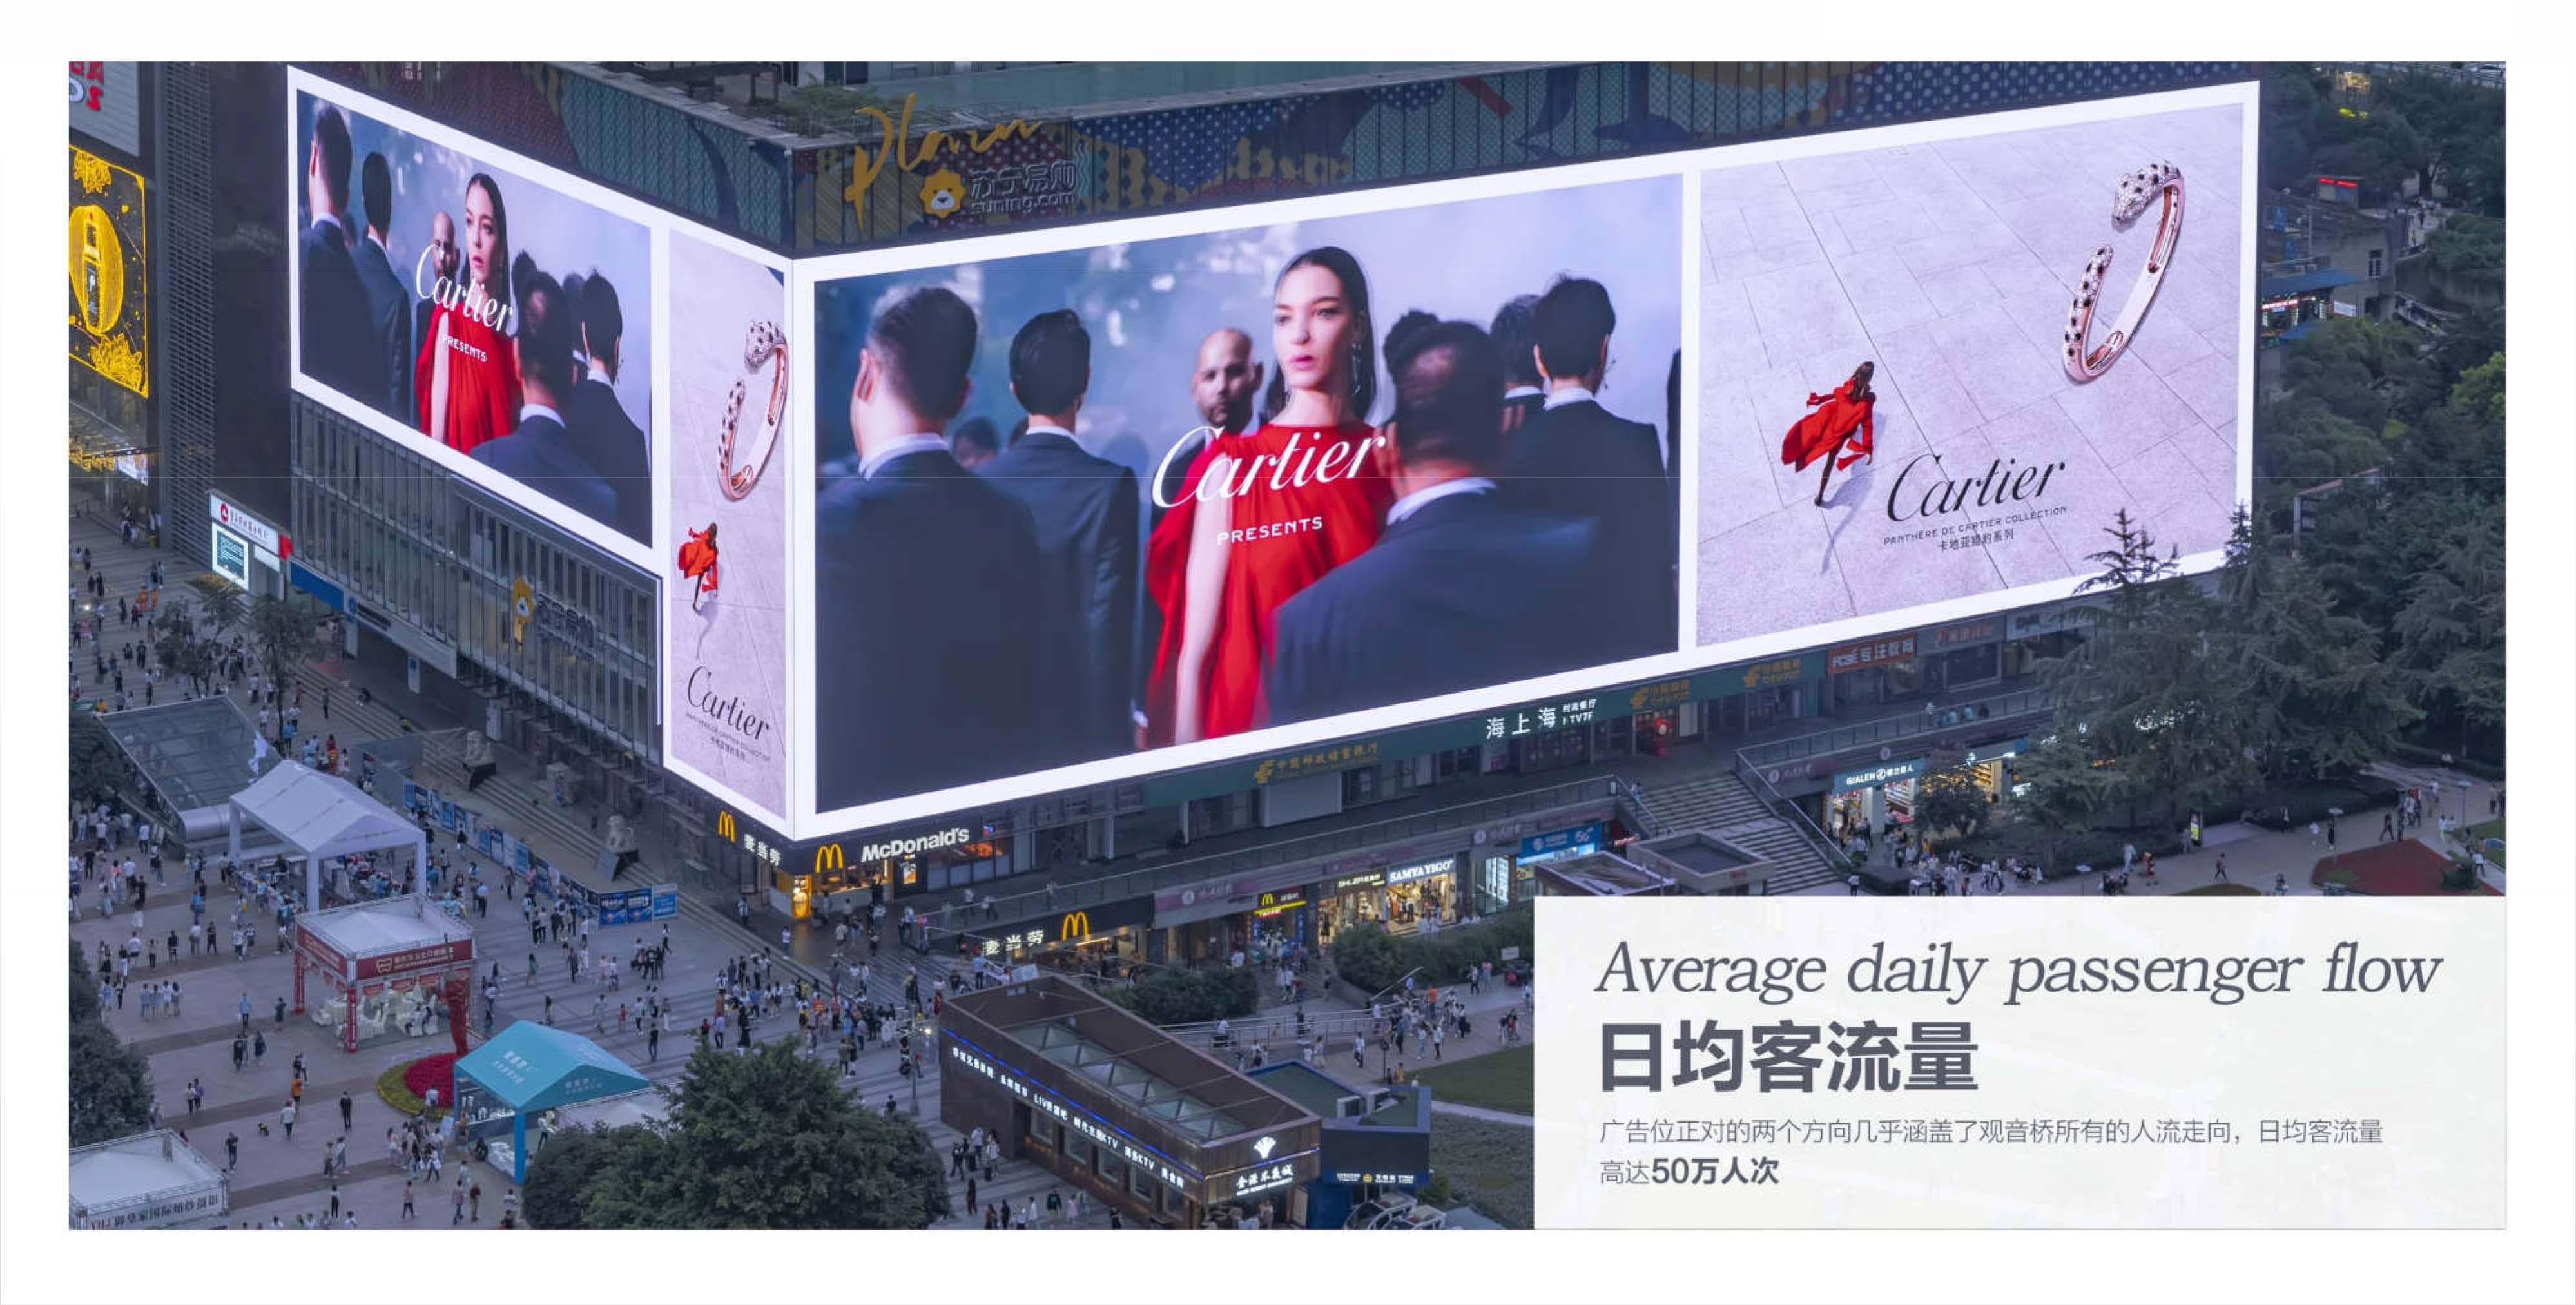 腾众传播解析重庆观音桥3788裸眼3d户外大屏广告投放的优势及价位